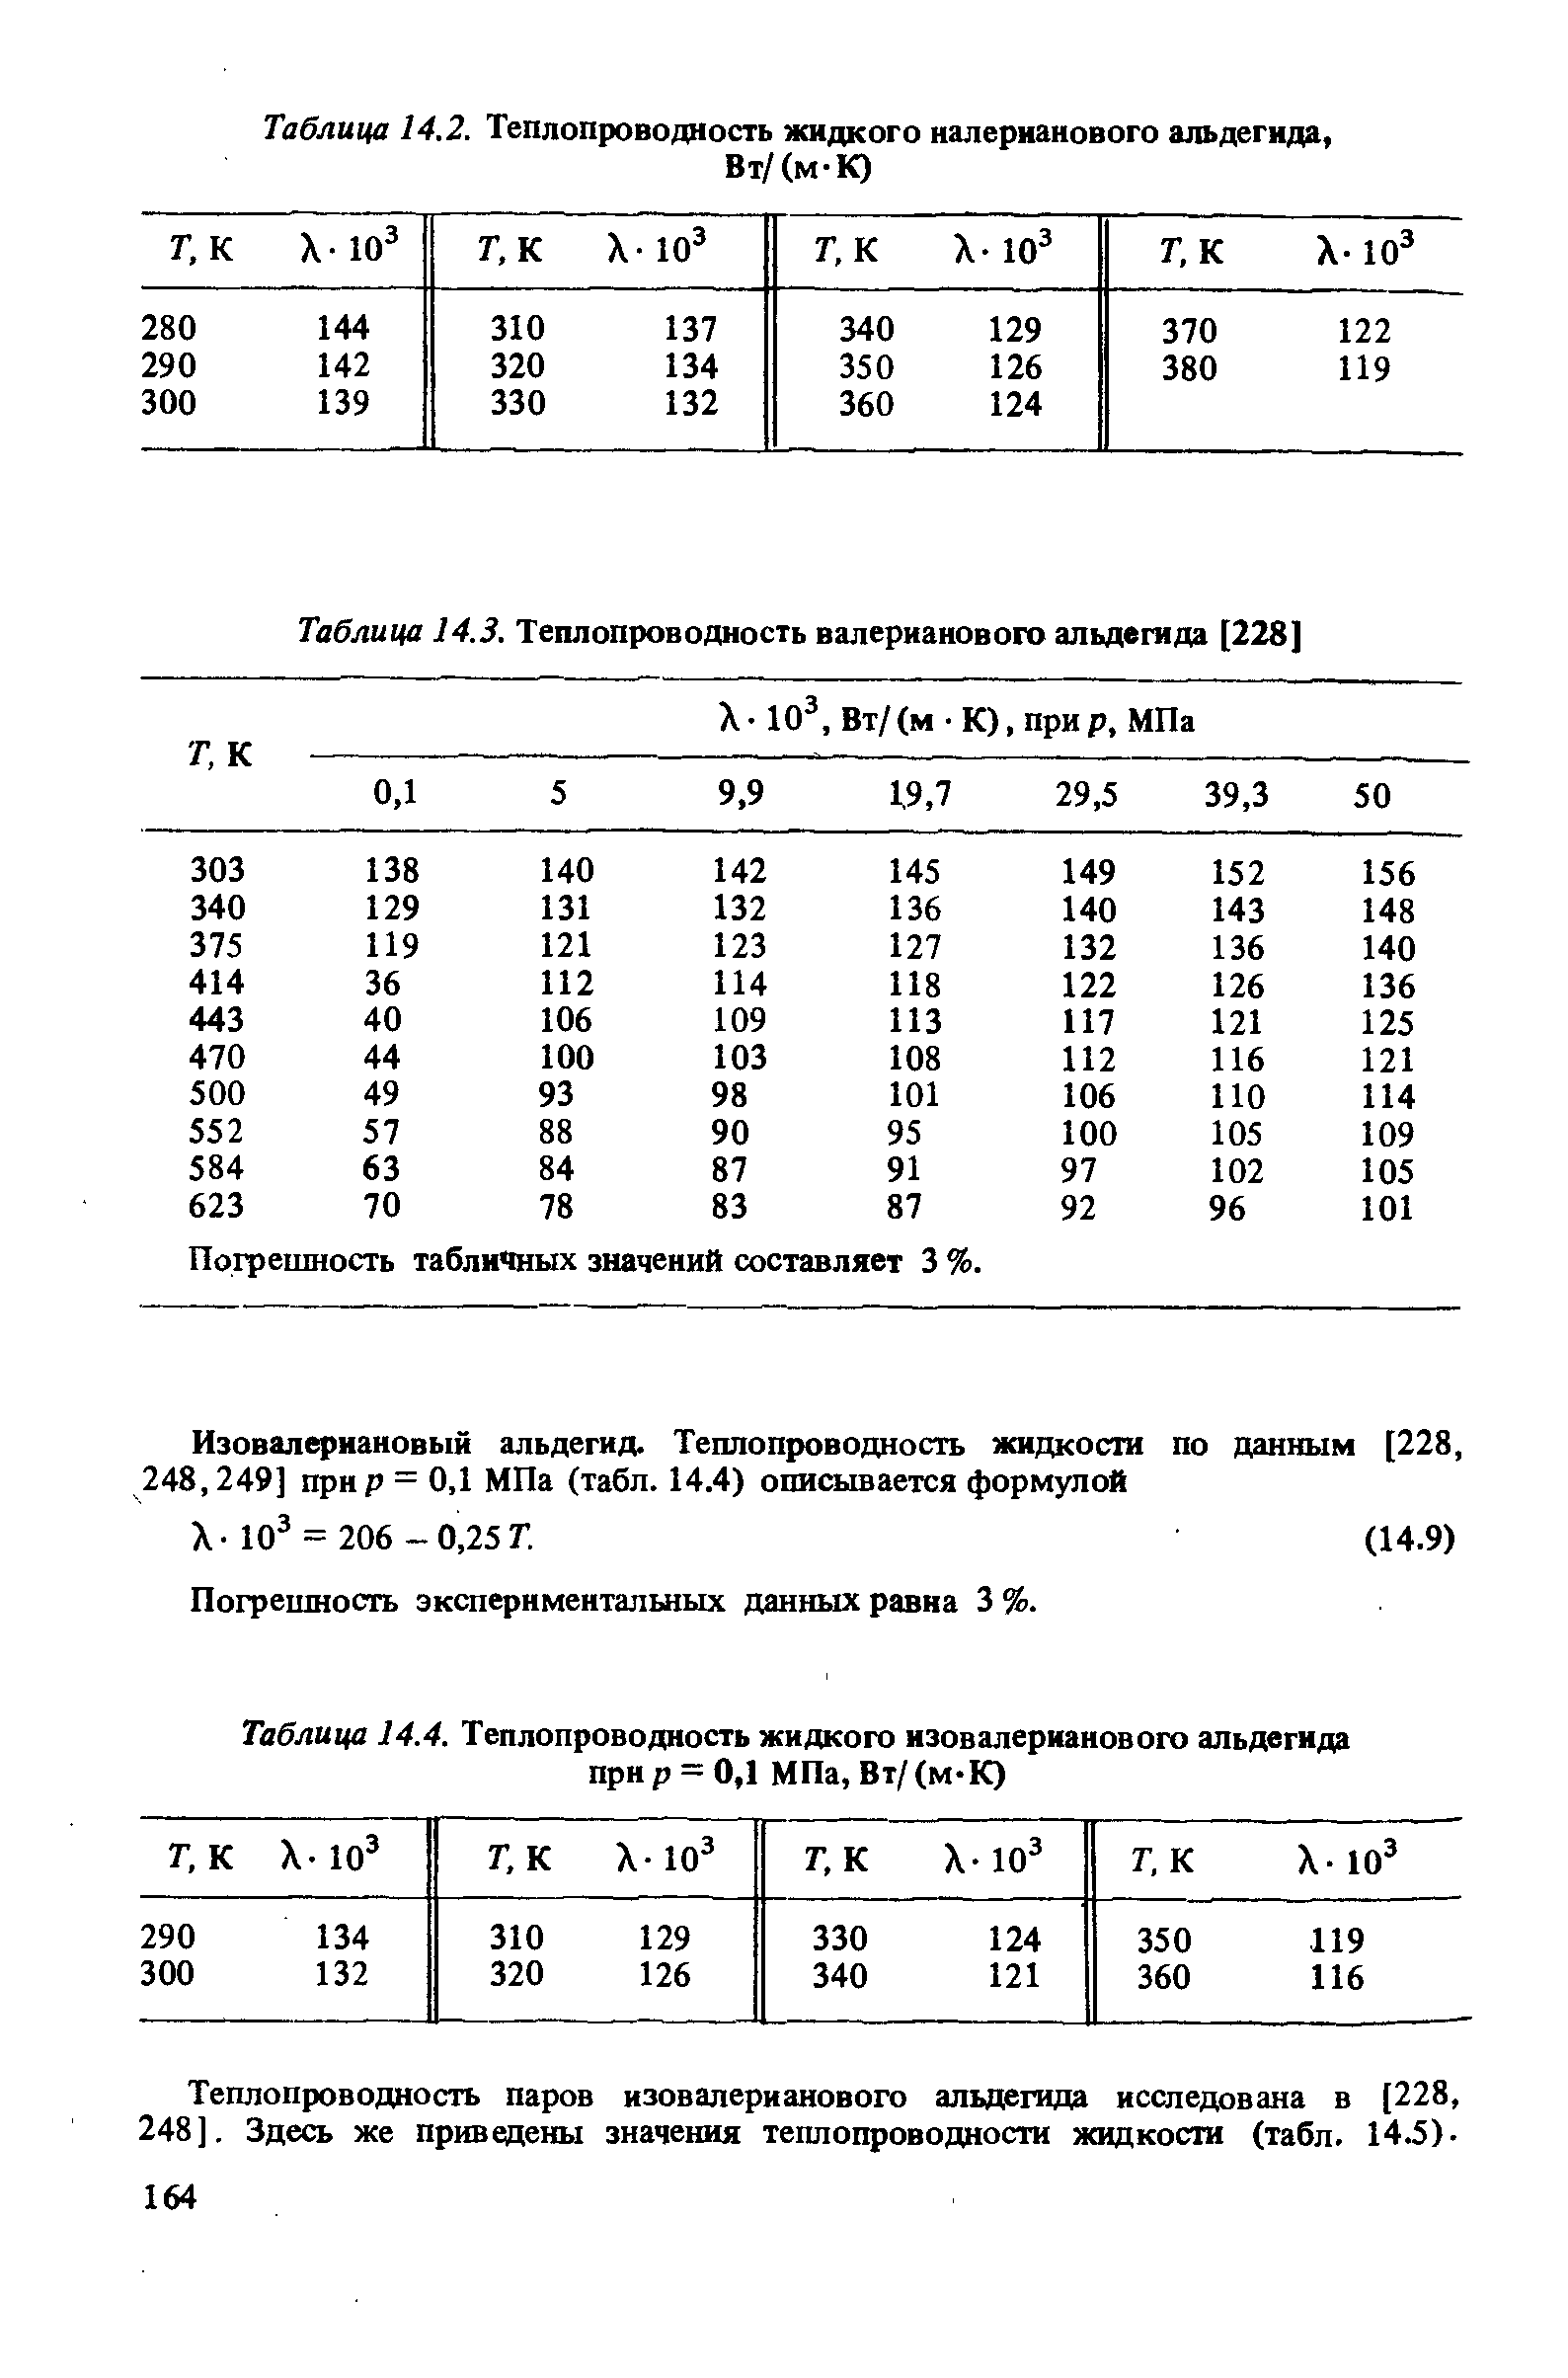 Таблица 14.4. Теплопроводность жидкого изовалерианового альдегида прир = 0,1 МПа, Вт/(м-К)
